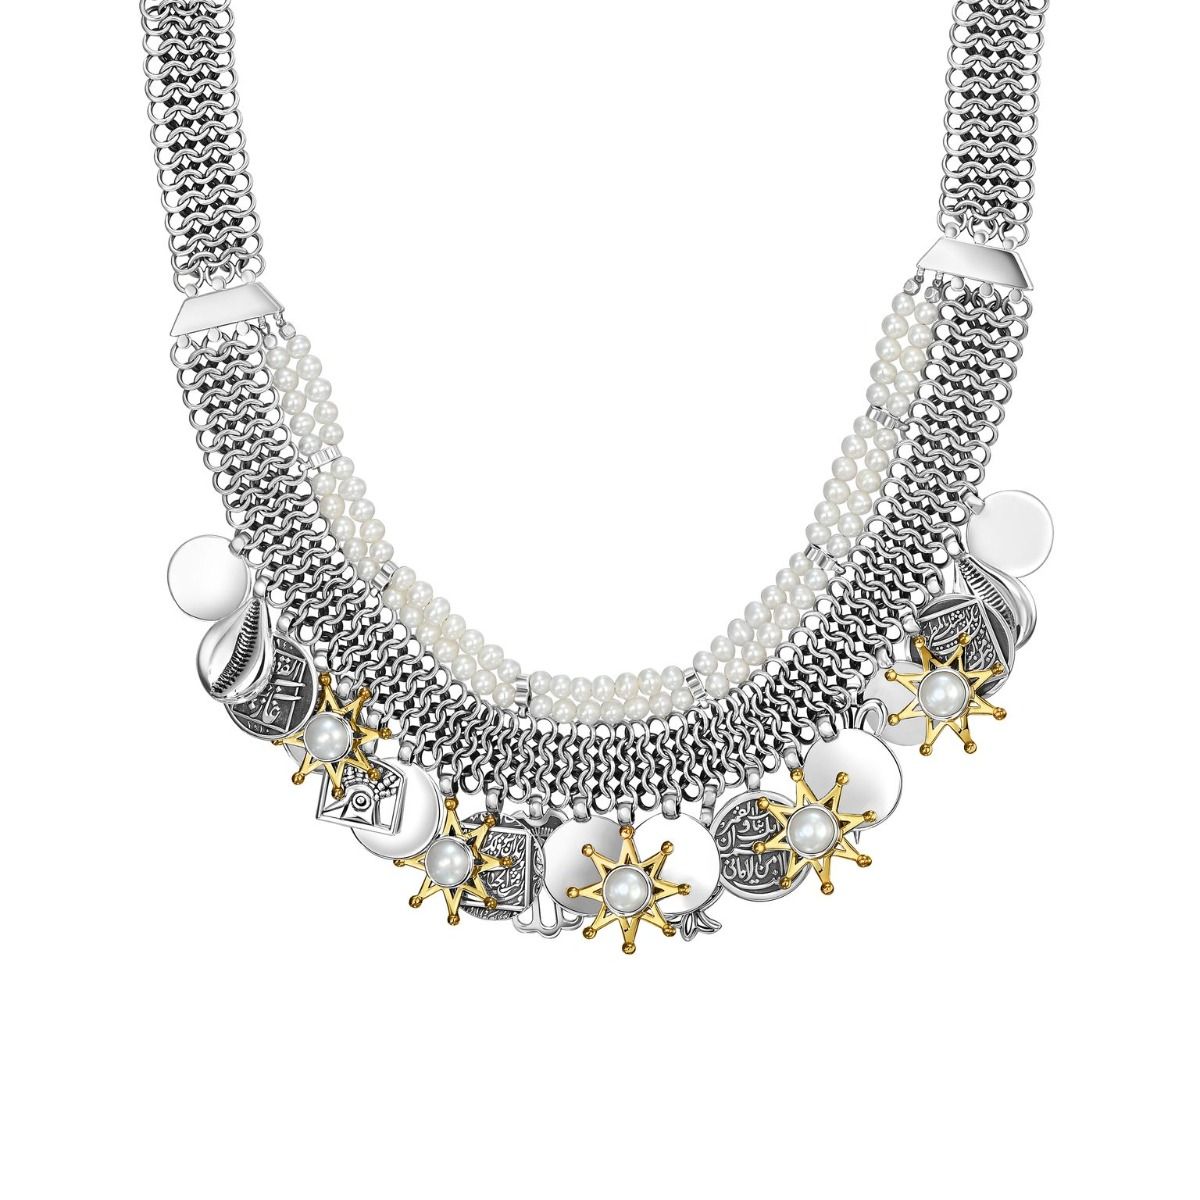 Talisman Necklace by Azza Fahmy - Designer Necklaces